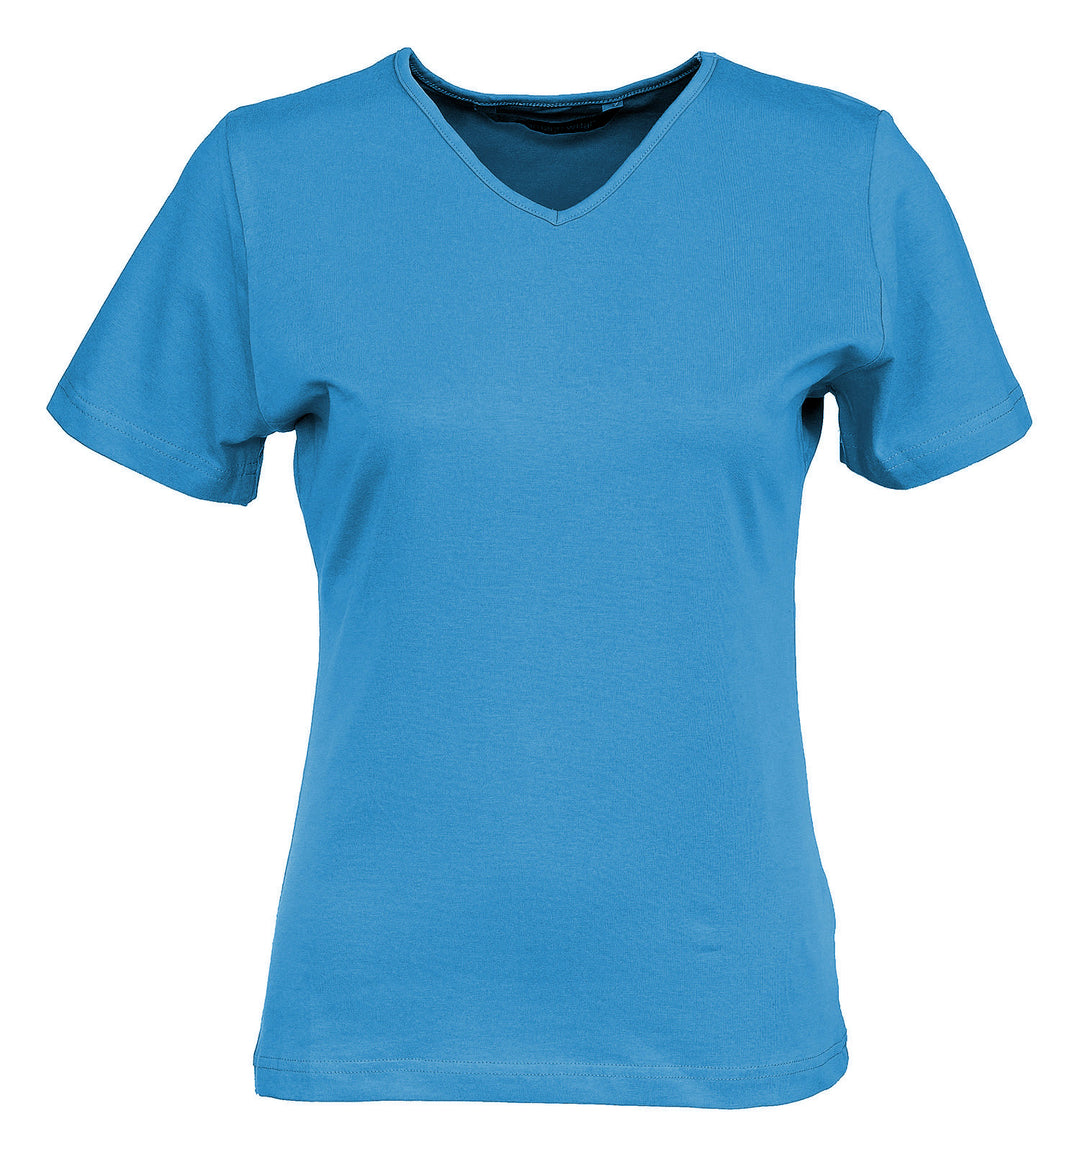 Taivaansininen lyhythihainen naisten t-paita v-pääntiellä. Aavistuksen vartalonmyötäinen malli.